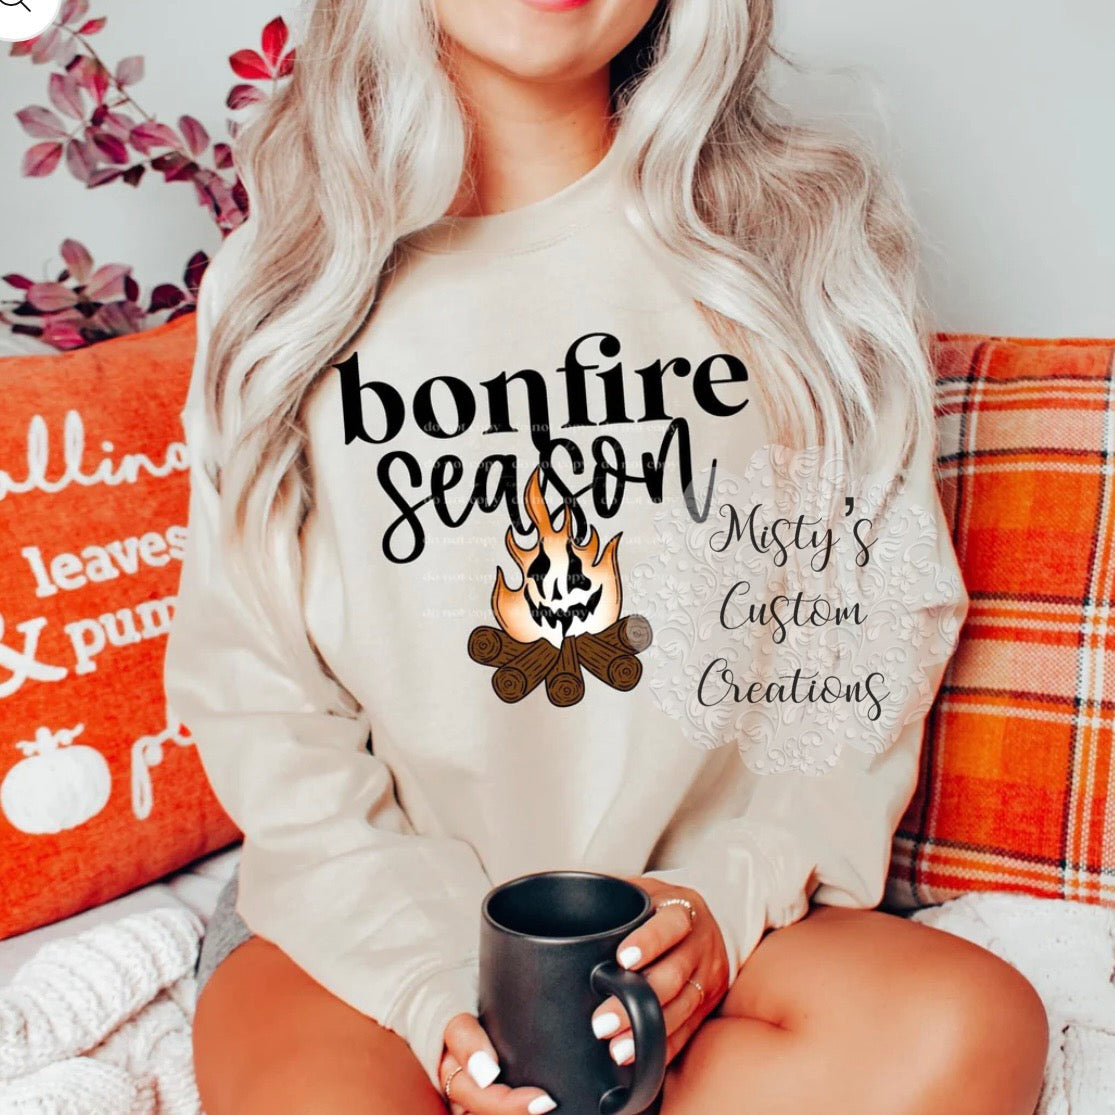 Bonfire season